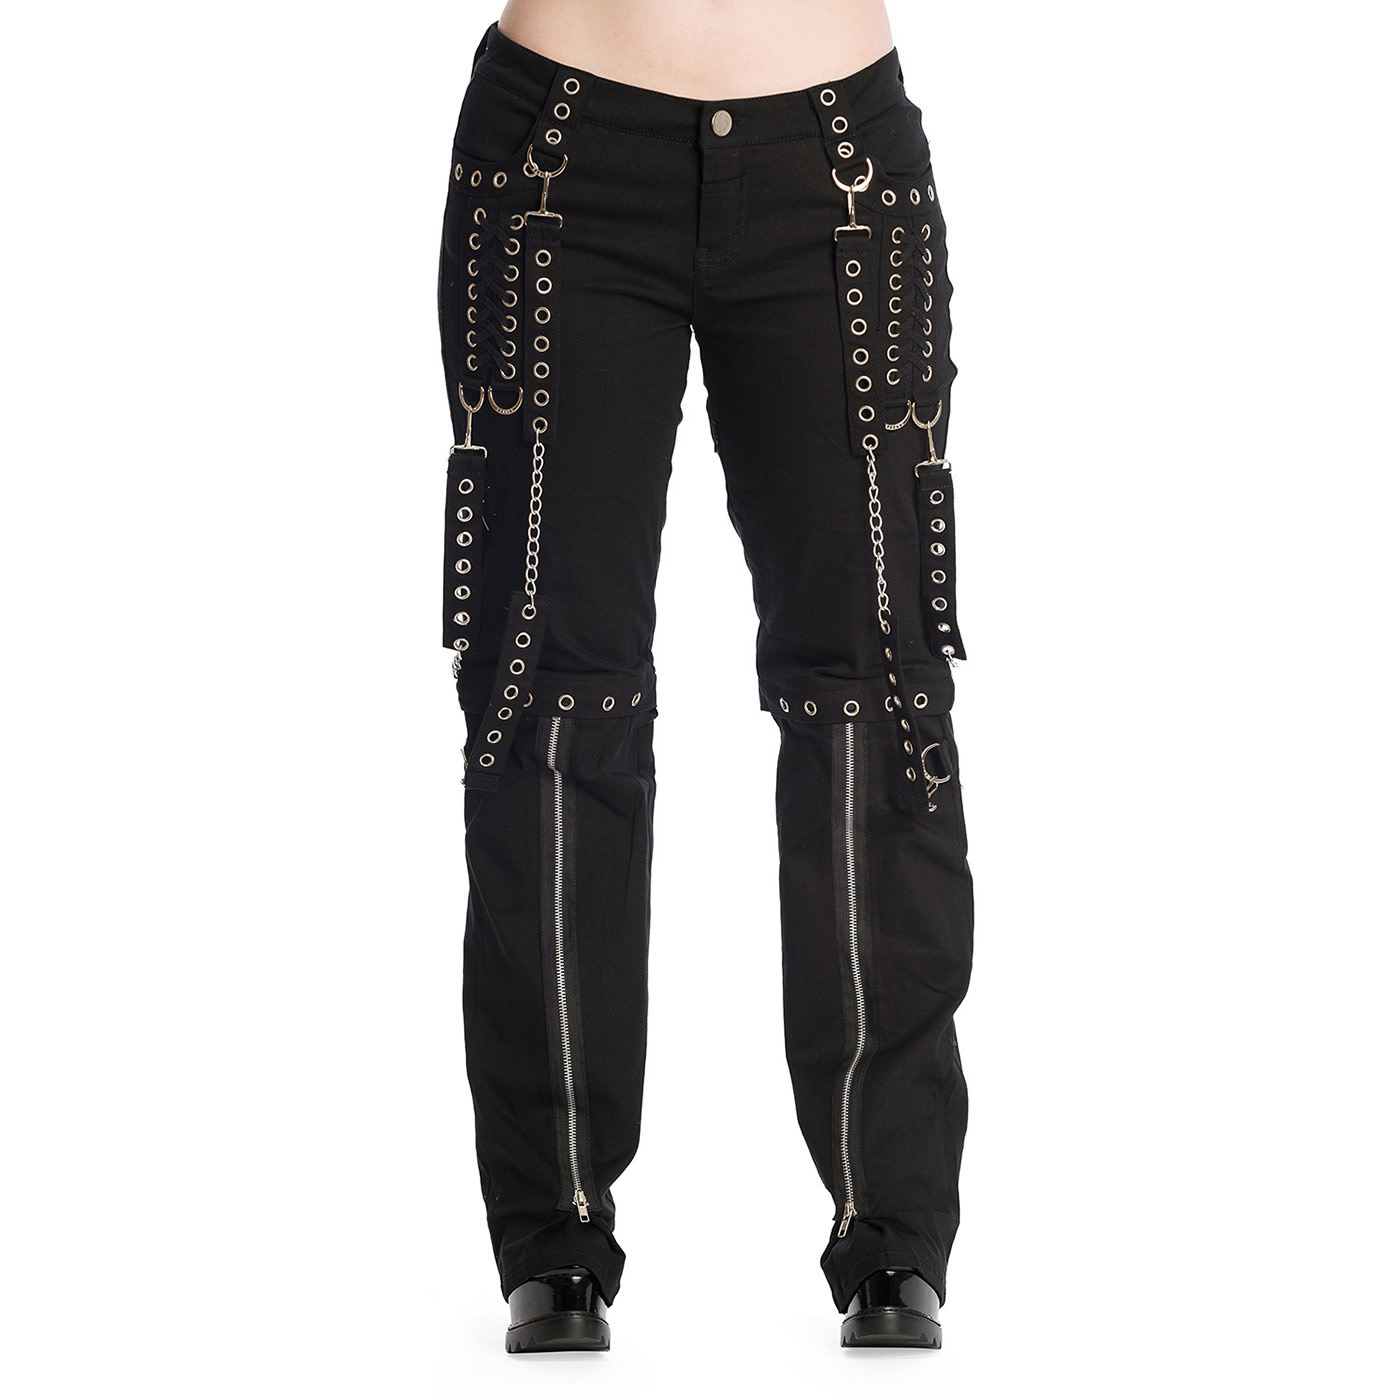 Women's pants (leggings) KILLSTAR - Hell bound